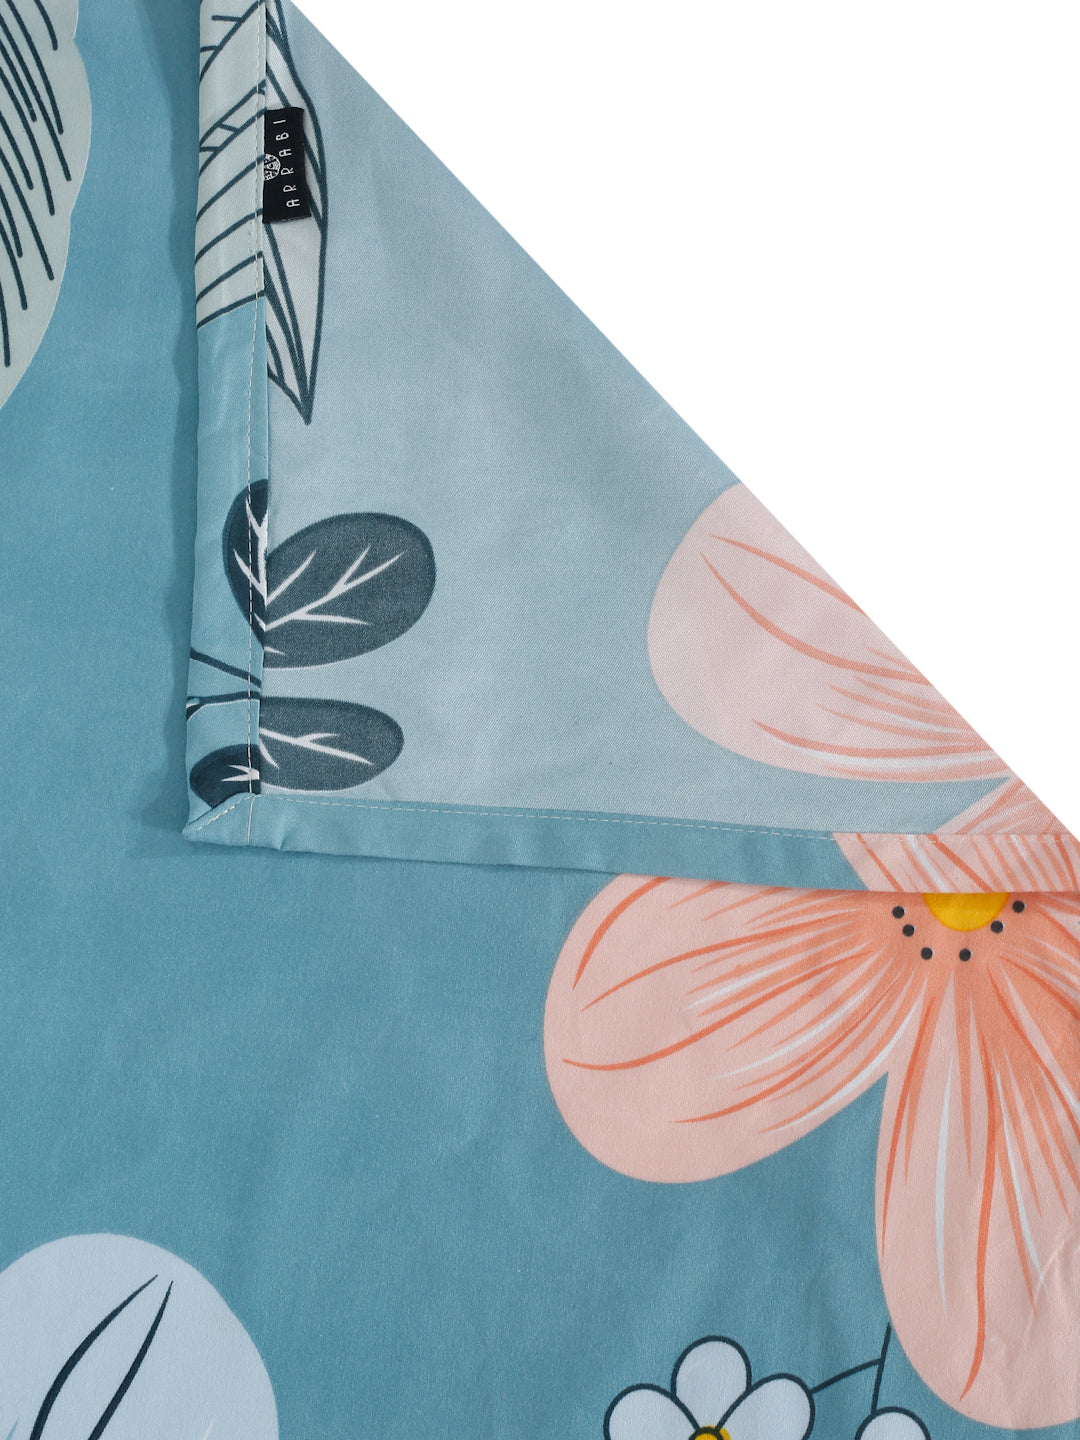 Arrabi Blue Floral TC Cotton Blend King Size Bedsheet with 2 Pillow Covers (250 x 215 cm)